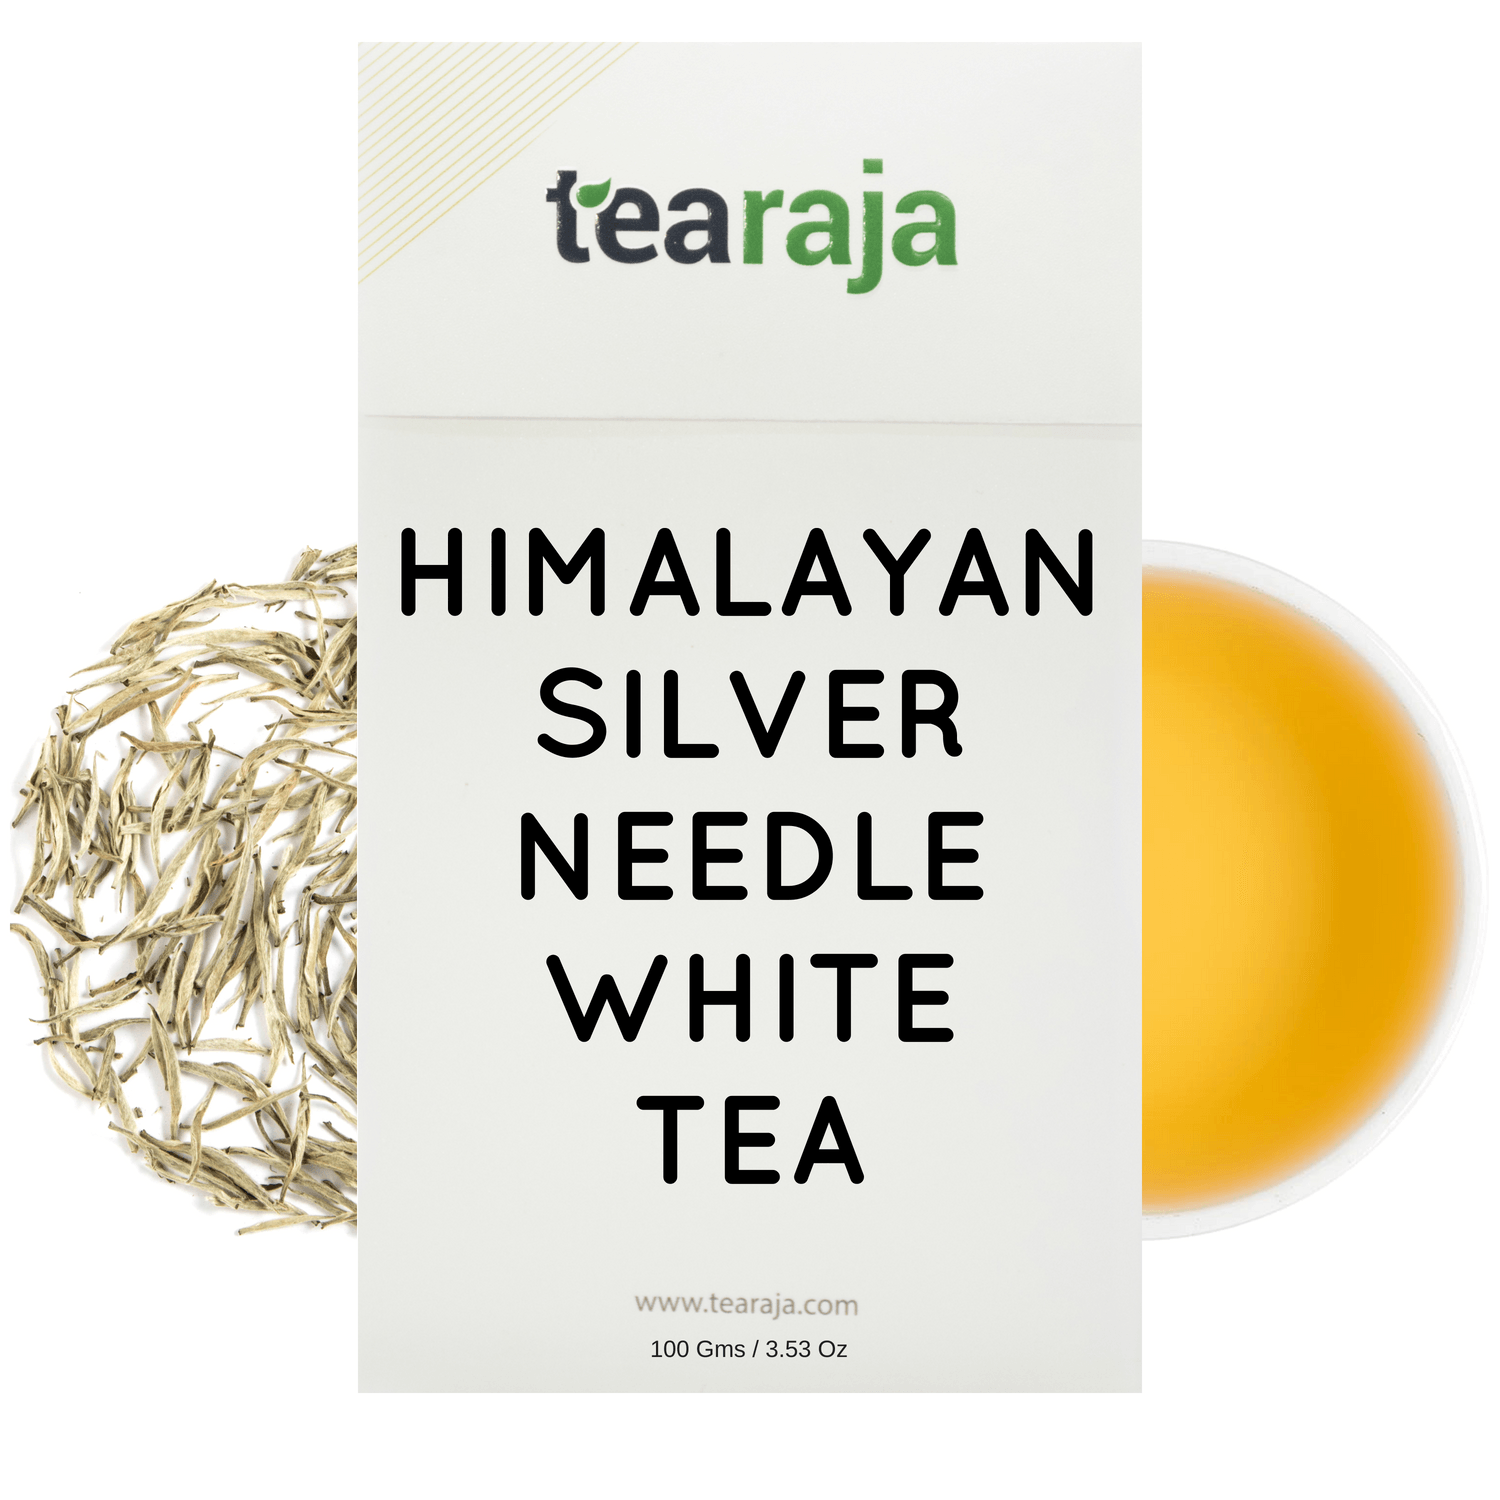 Himalayan Silver Needle White Tea - Tearaja